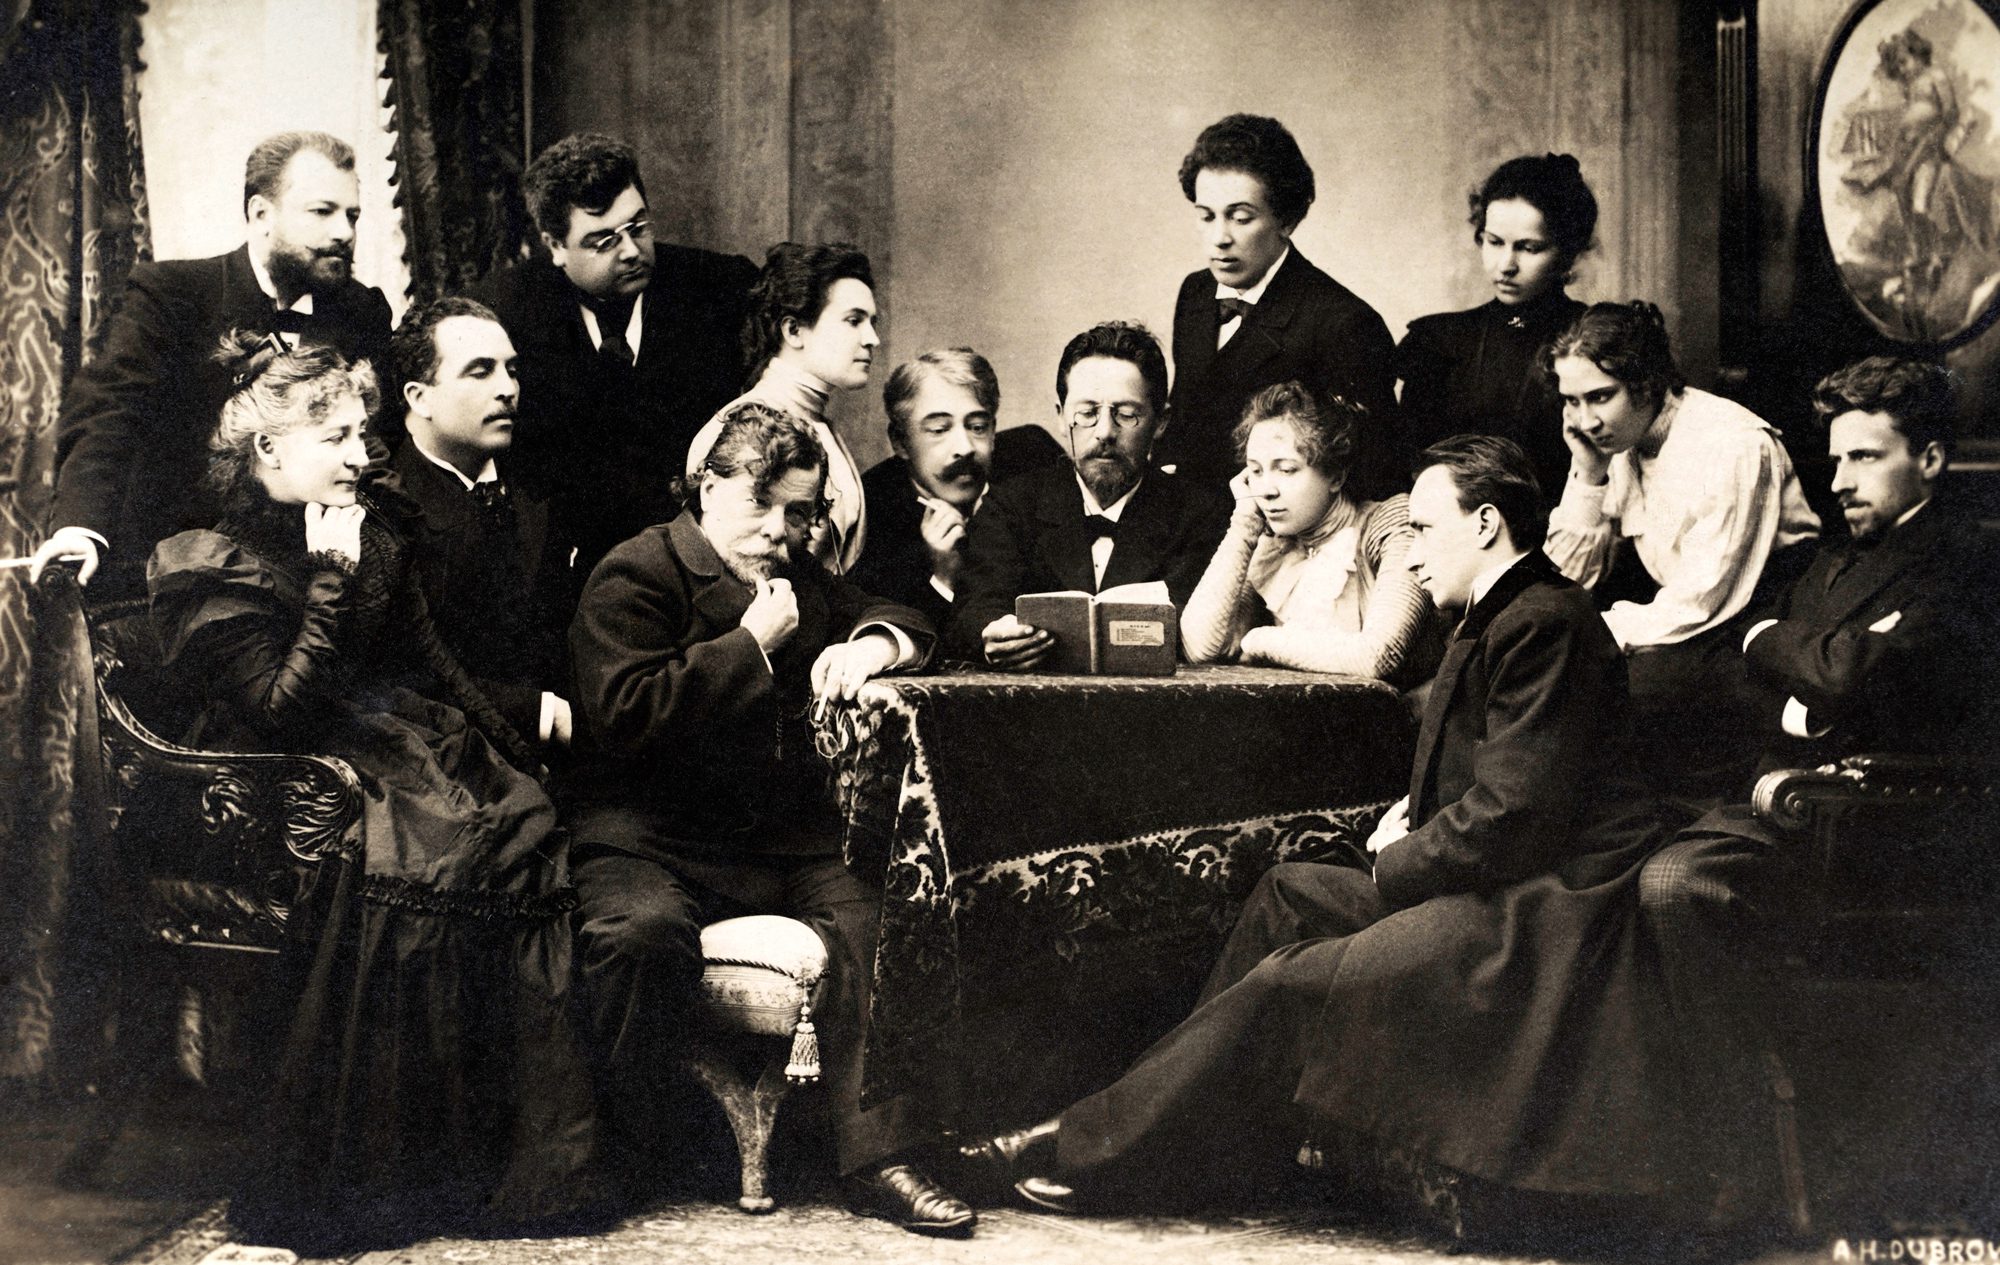 تشيخوف يقرأ مسرحيّة النّورس مع مجموعةٍ من ممثّلي المسرح.